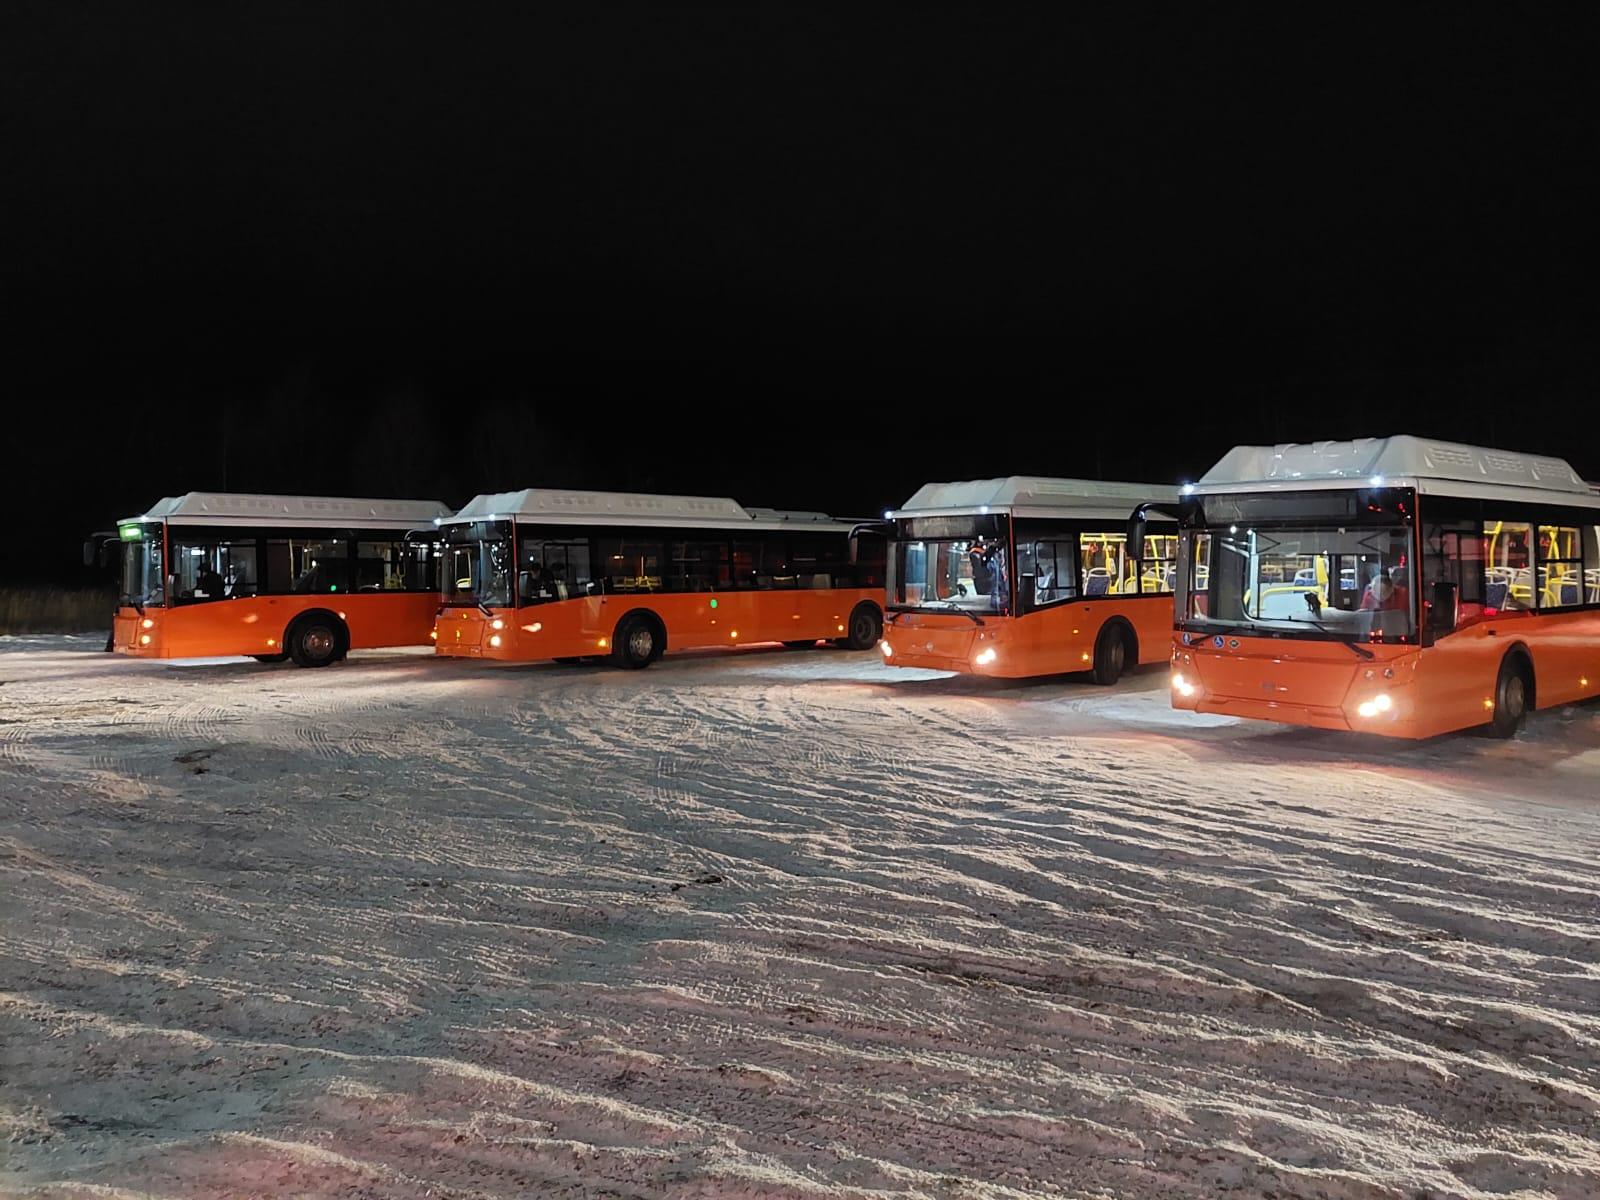 32 новых городских автобуса доставлены в Нижний Новгород